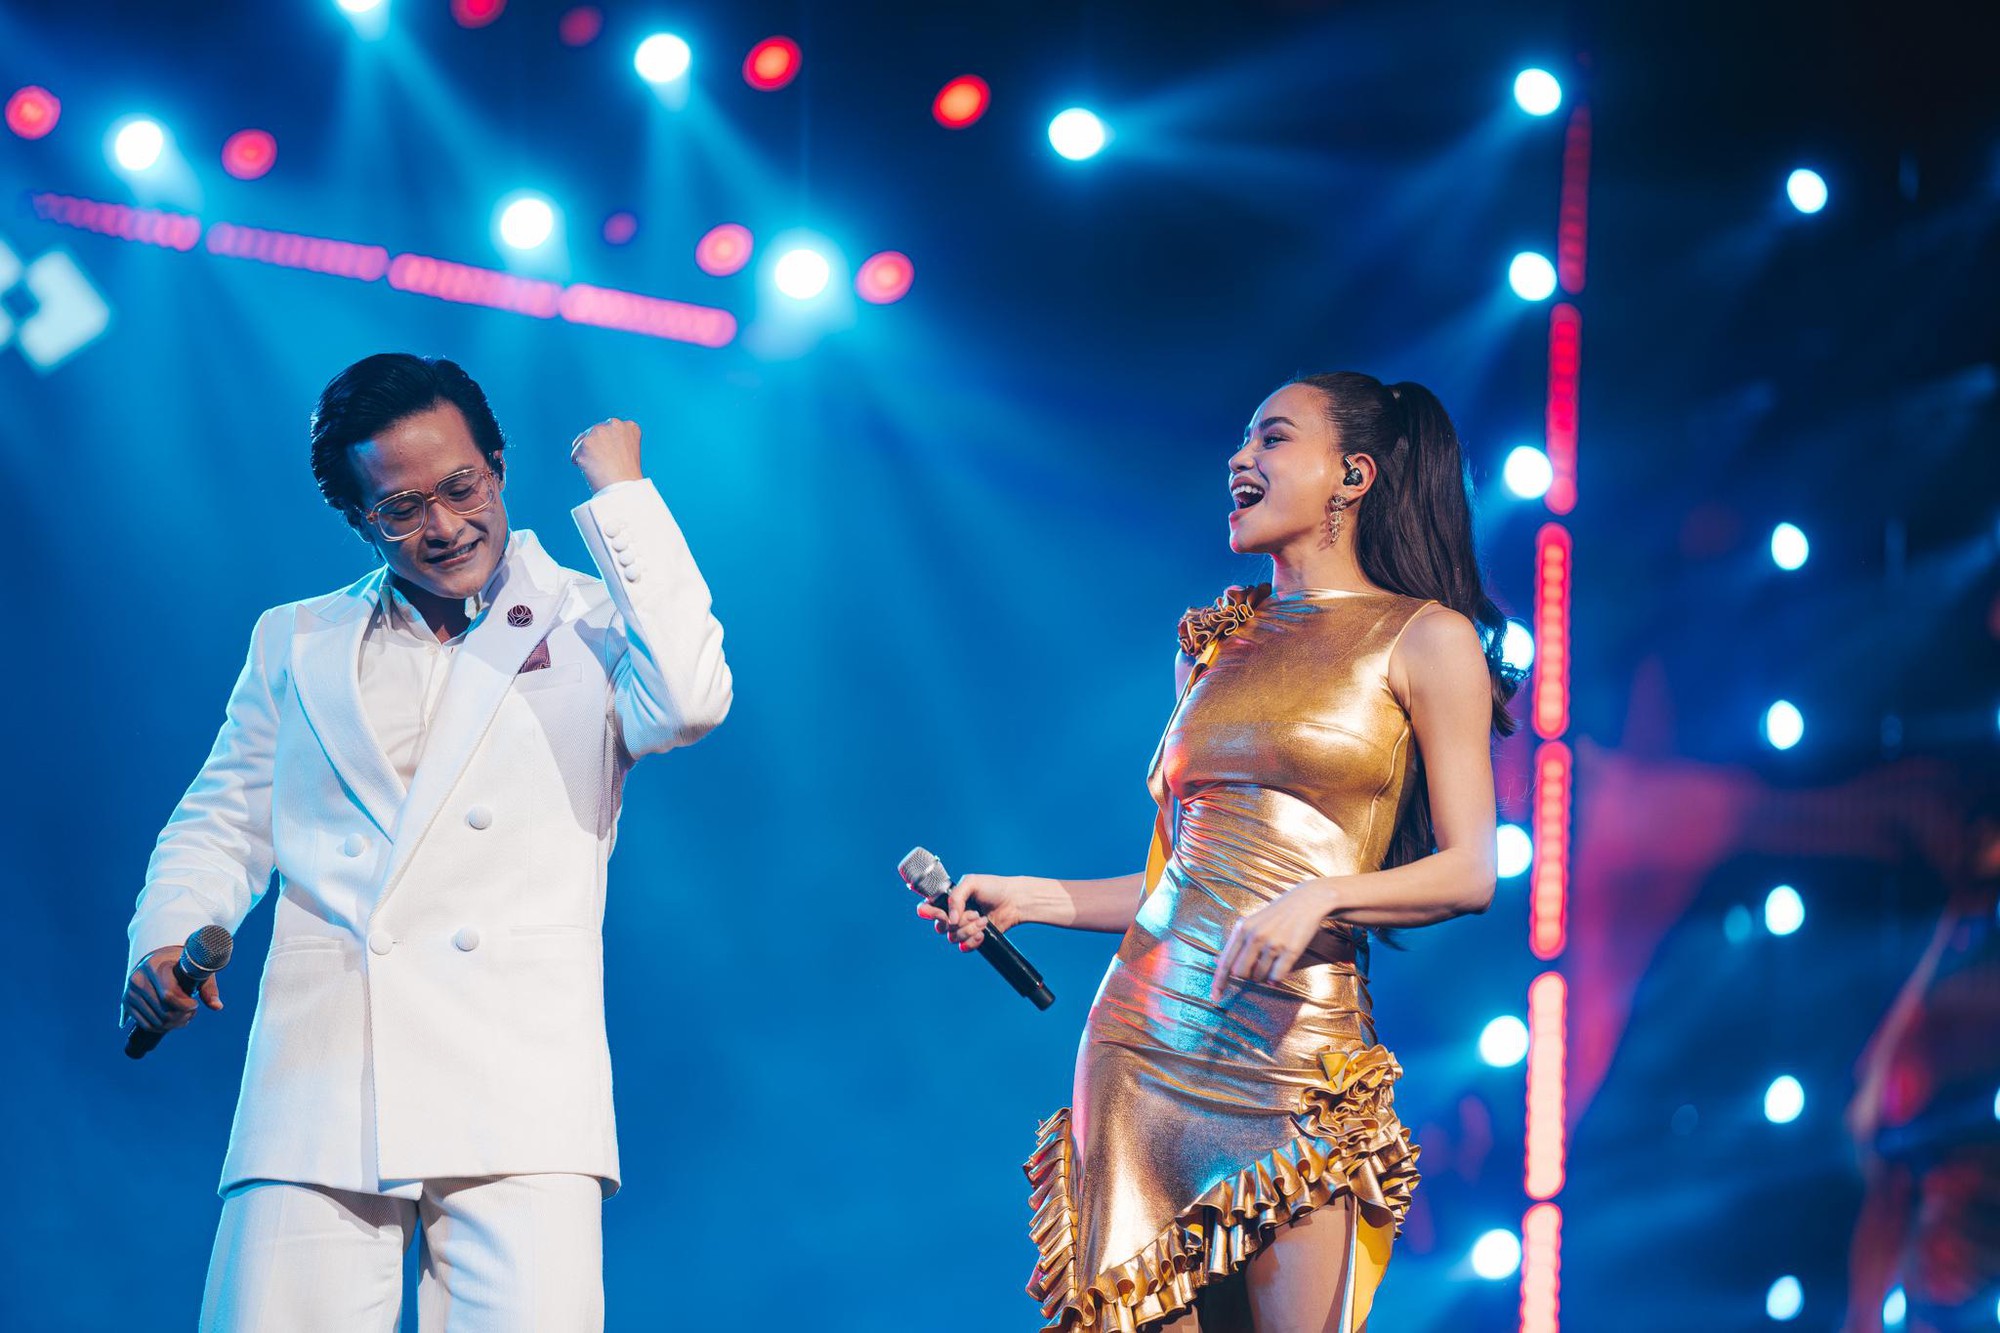 Hà Anh Tuấn và Hồ Ngọc Hà gây xúc động khi song ca loạt hit trong đêm nhạc “Thời Khắc Giao Thời” tại TP.HCM - Ảnh 3.